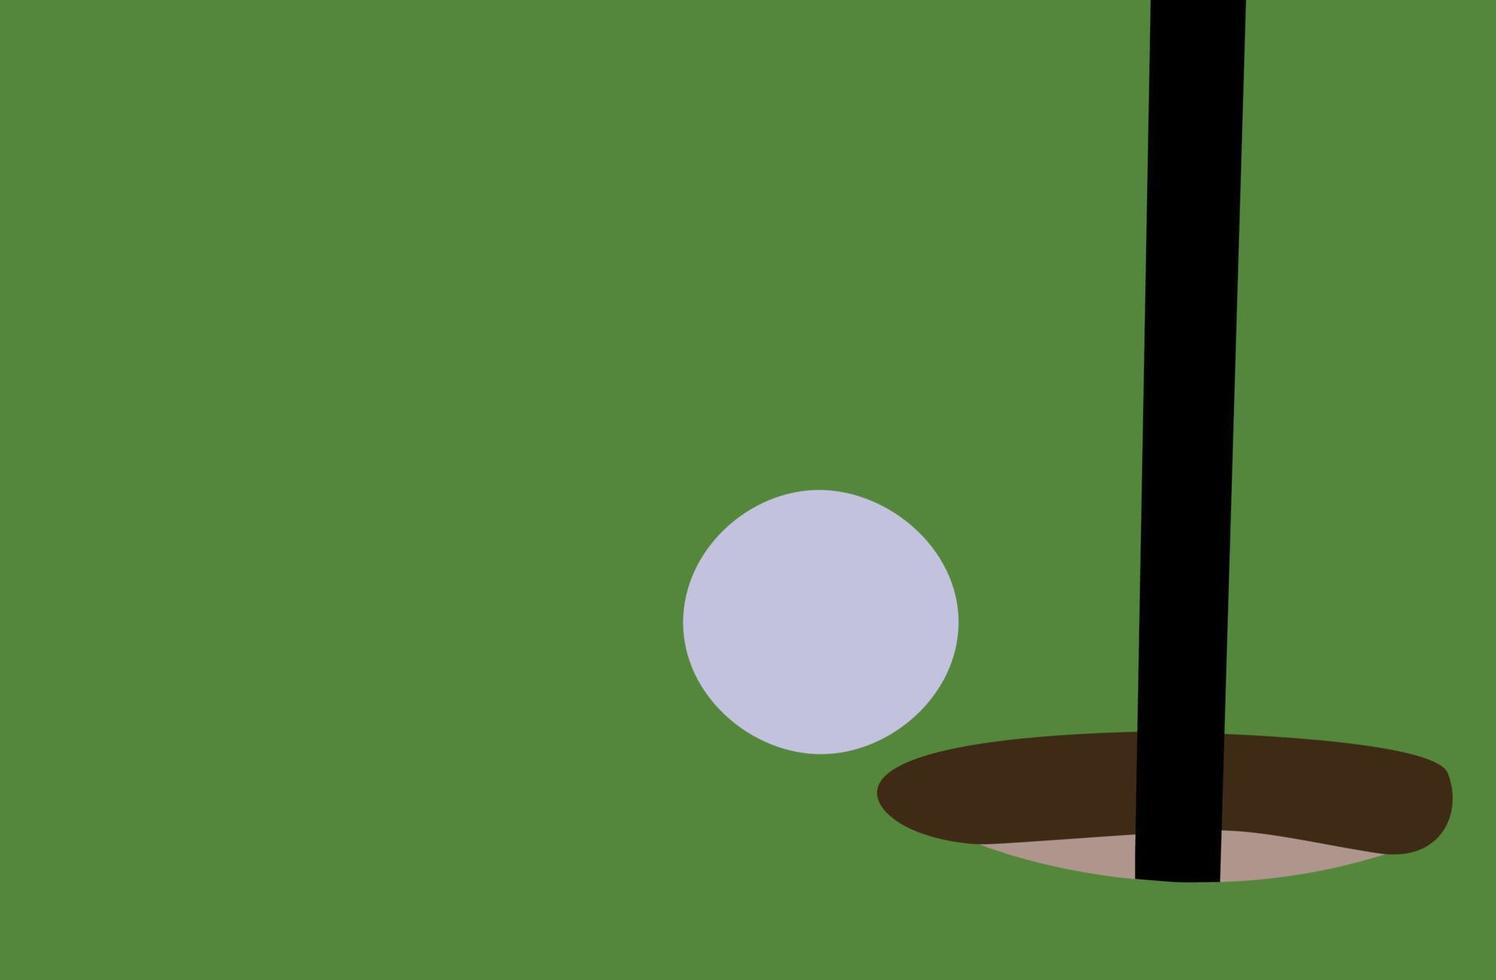 balle de golf sur l'herbe, illustration, vecteur sur fond blanc.